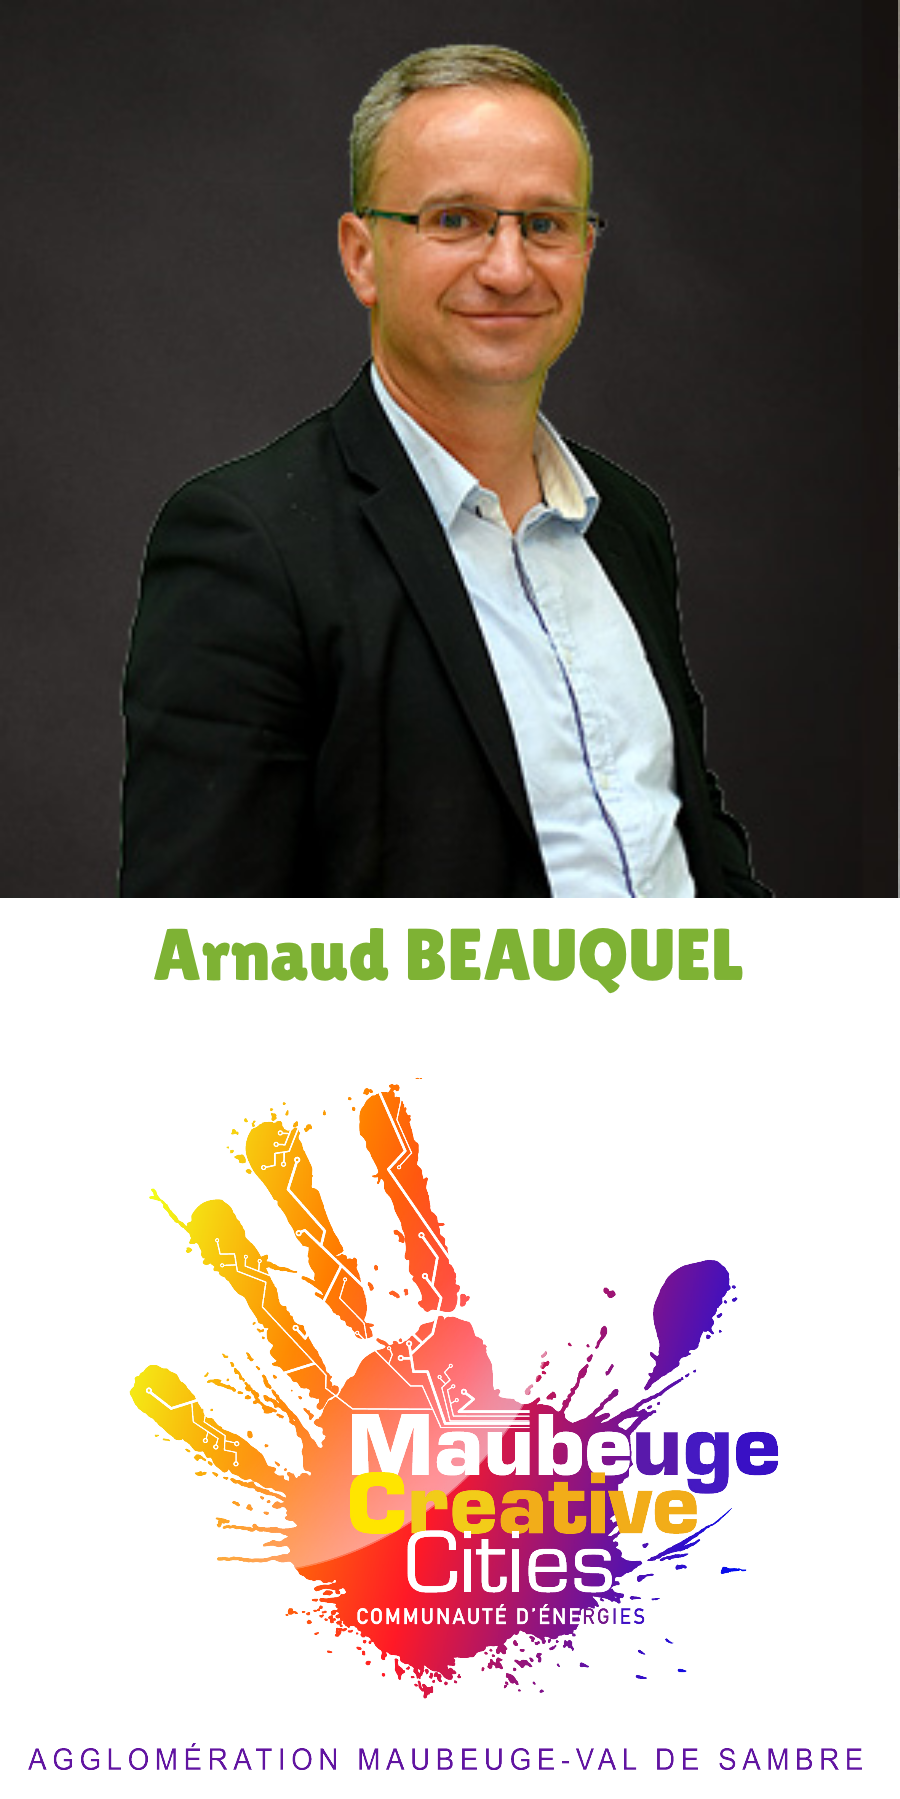 Arnaud BEAUQUEL